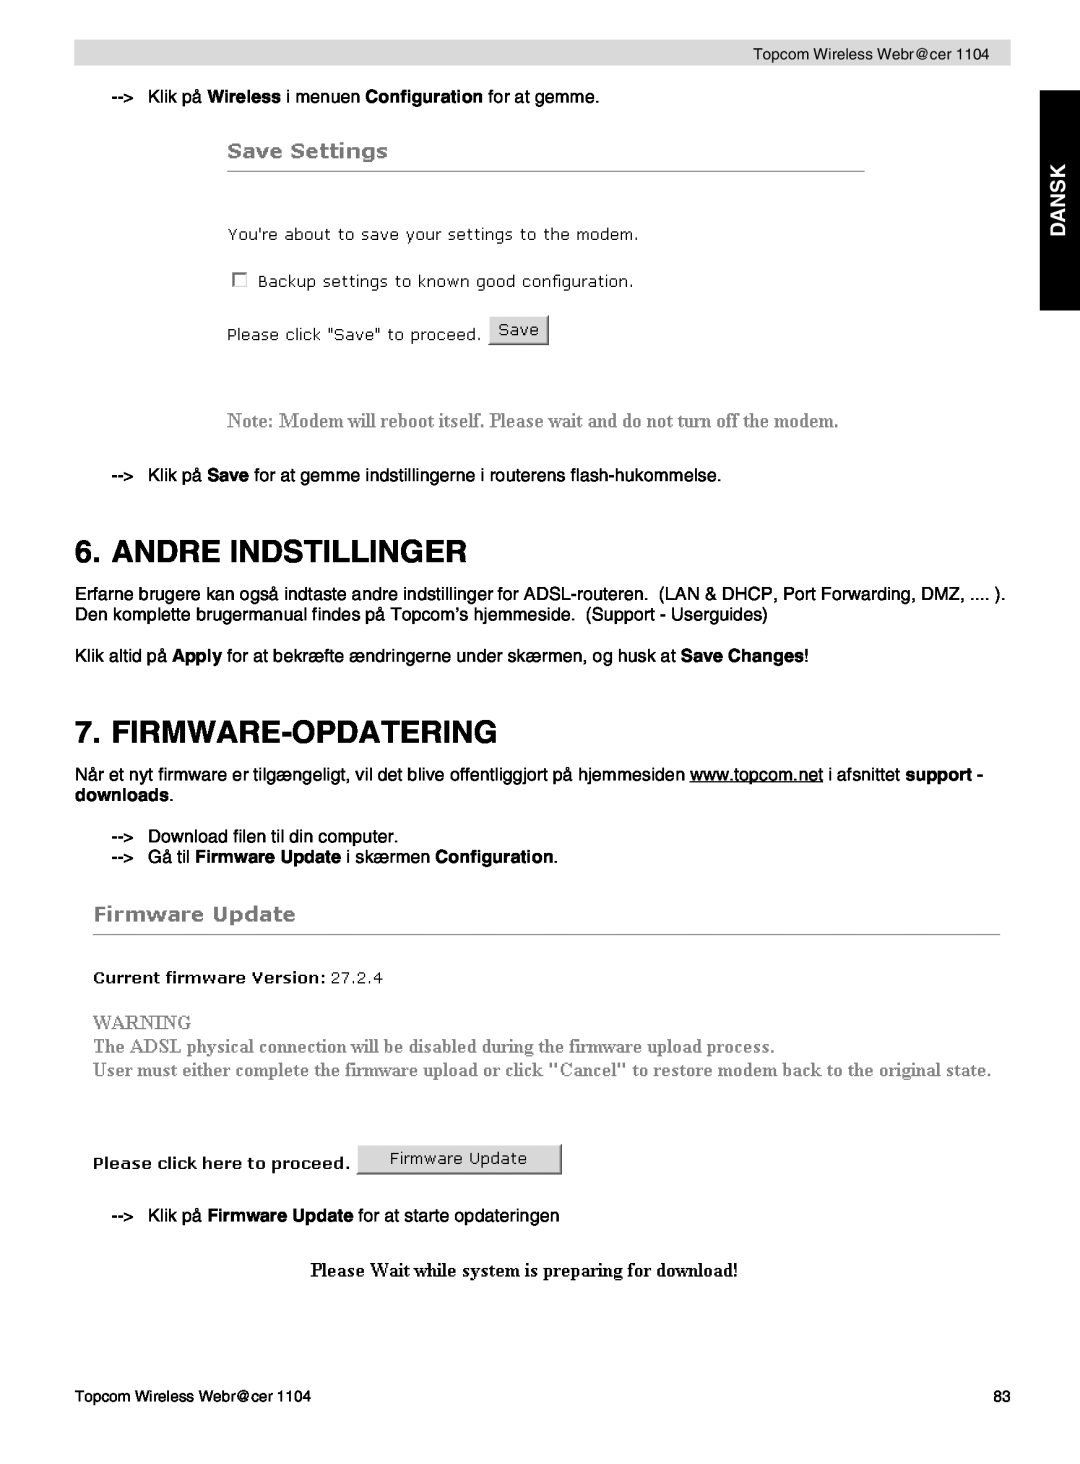 Topcom 1104 Andre Indstillinger, Firmware-Opdatering, Dansk, Gå til Firmware Update i skærmen Configuration 